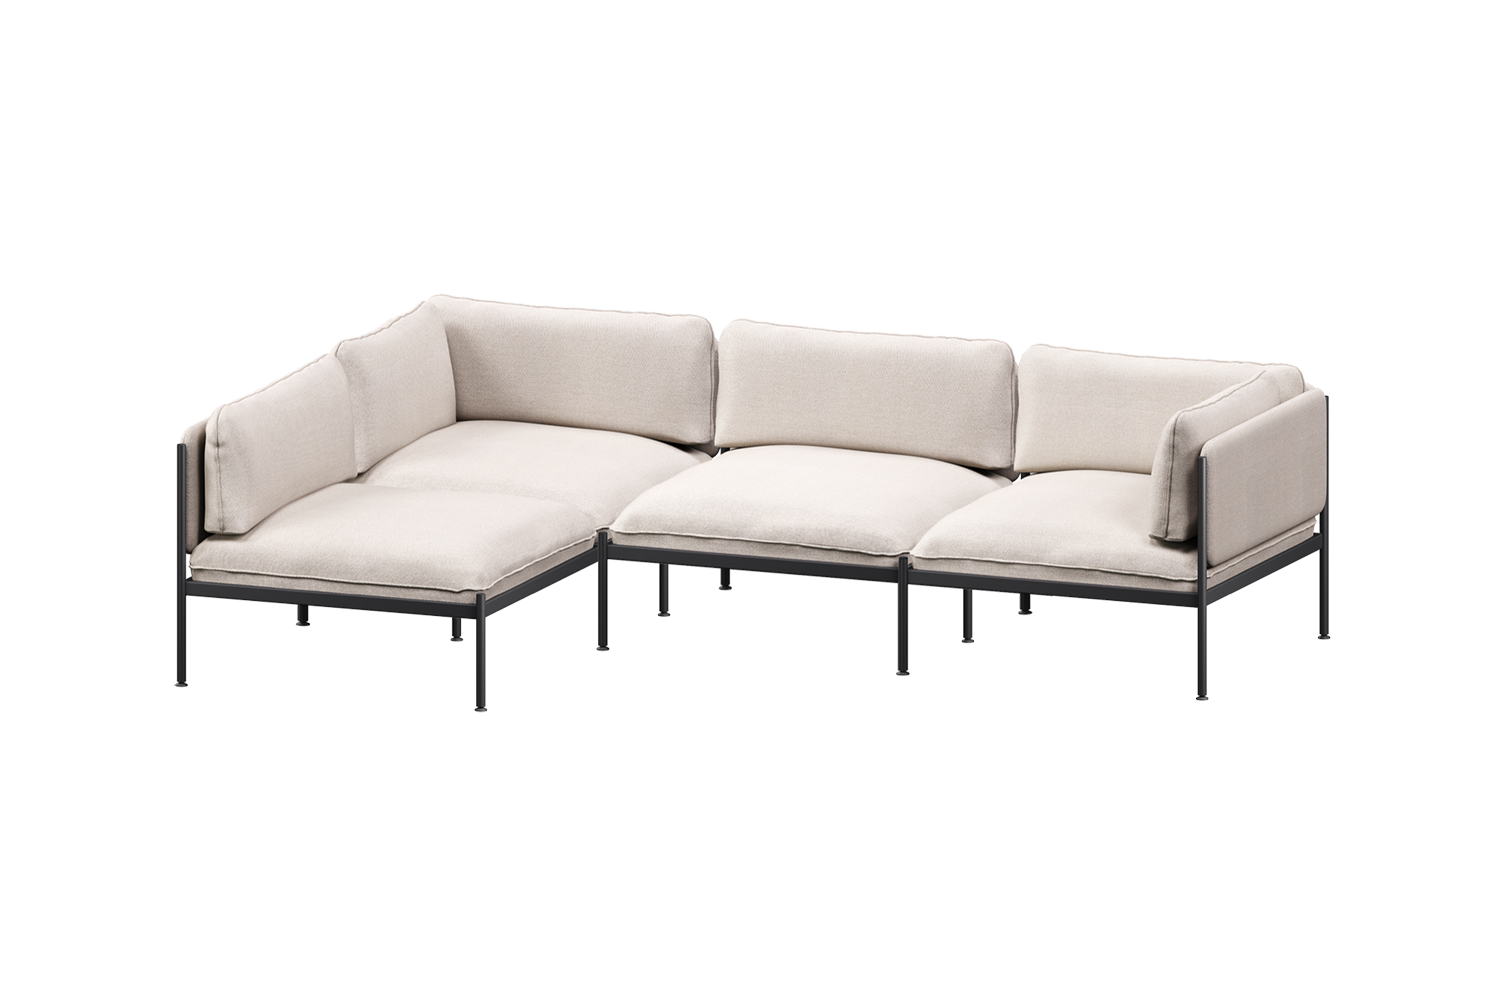 Toom Modular Sofa 4-Sitzer Konfiguration 2b in Oatmilk Beige  präsentiert im Onlineshop von KAQTU Design AG. Ecksofa links ist von Noo.ma